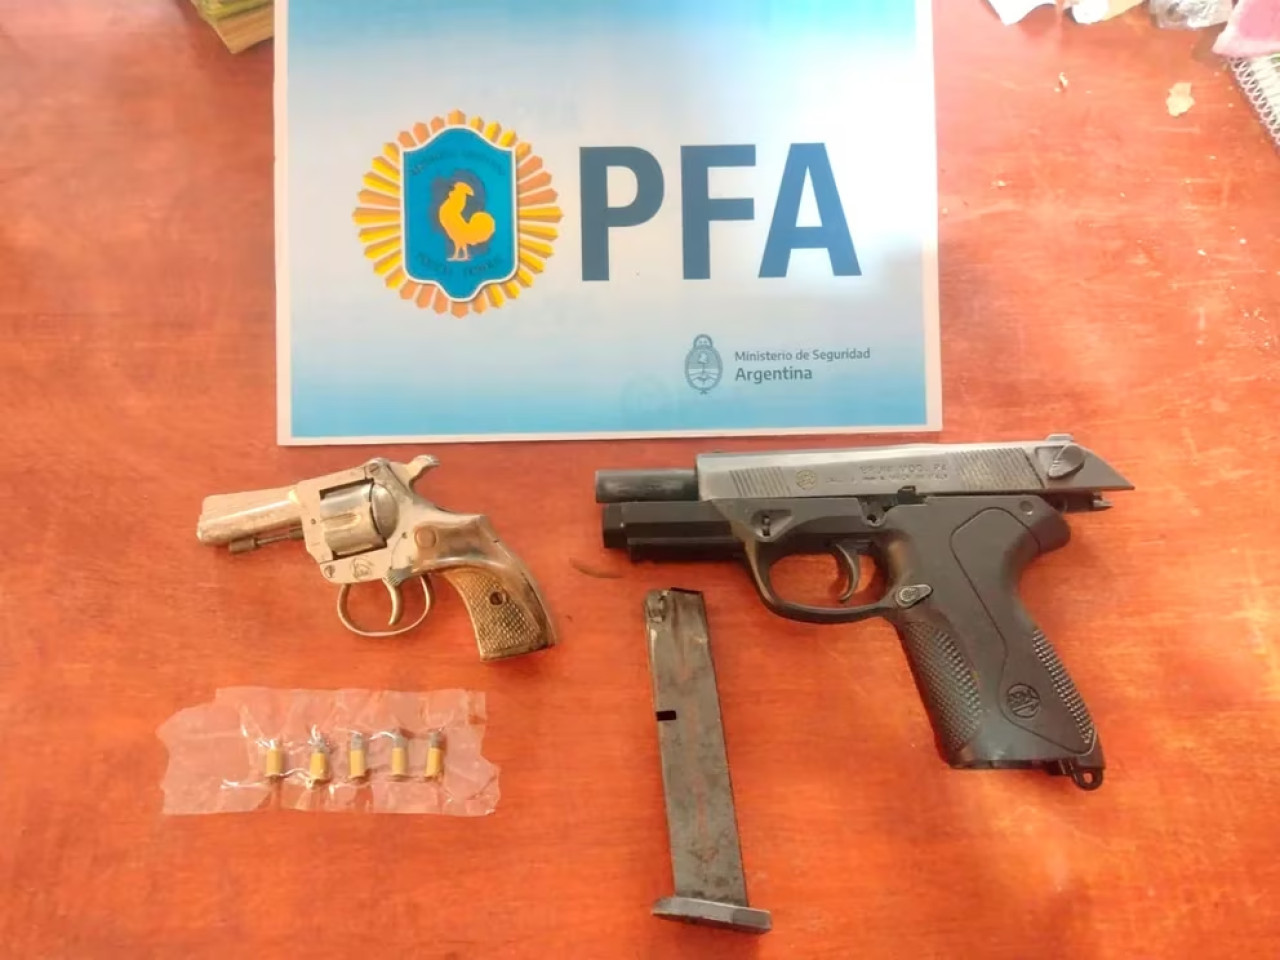 Las armas incautadas en el operativo. Foto: PFA.